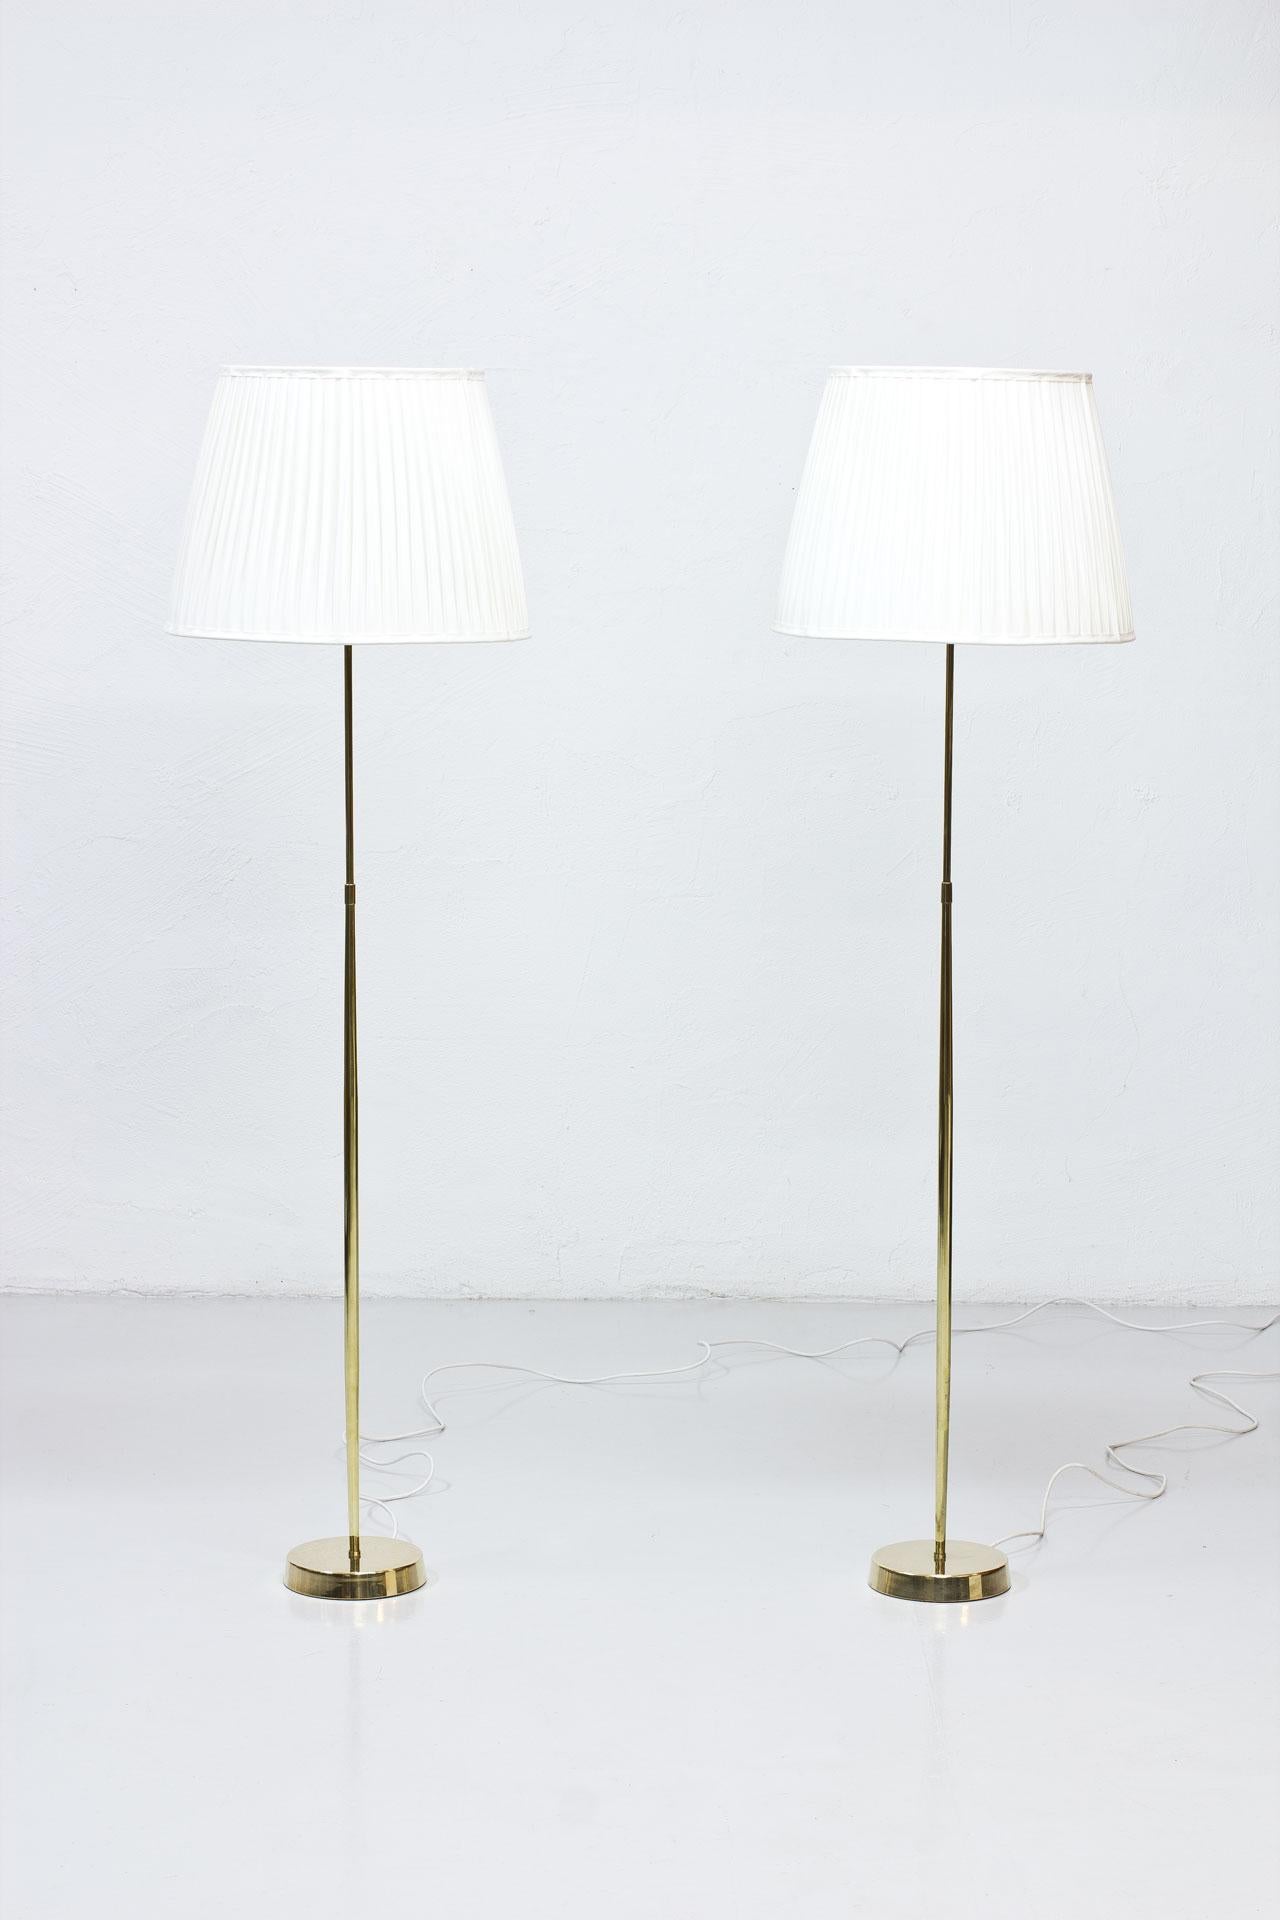 Élevez votre espace avec cette exquise paire de lampadaires vintage ASEA Belysning, fabriqués en Suède dans les années 1950. Ces lampes sont un mélange harmonieux d'élégance et de fonctionnalité, conçues pour apporter une sophistication intemporelle